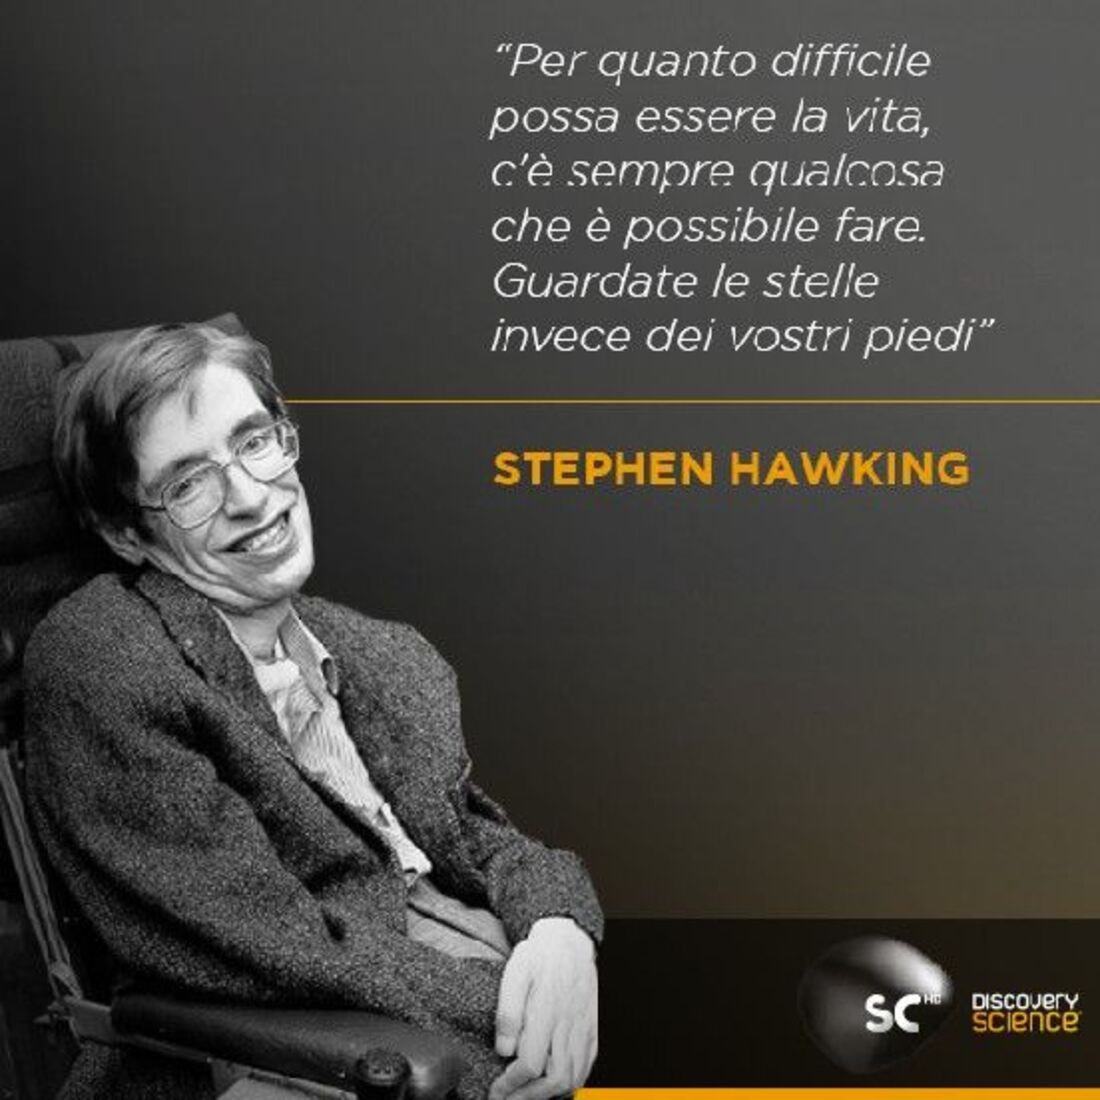 "Per quanto difficile possa essere la vita, c'è sempre qualcosa che è possibile fare. Guardate le stelle invece dei vostri piedi." - Stephen Hawking